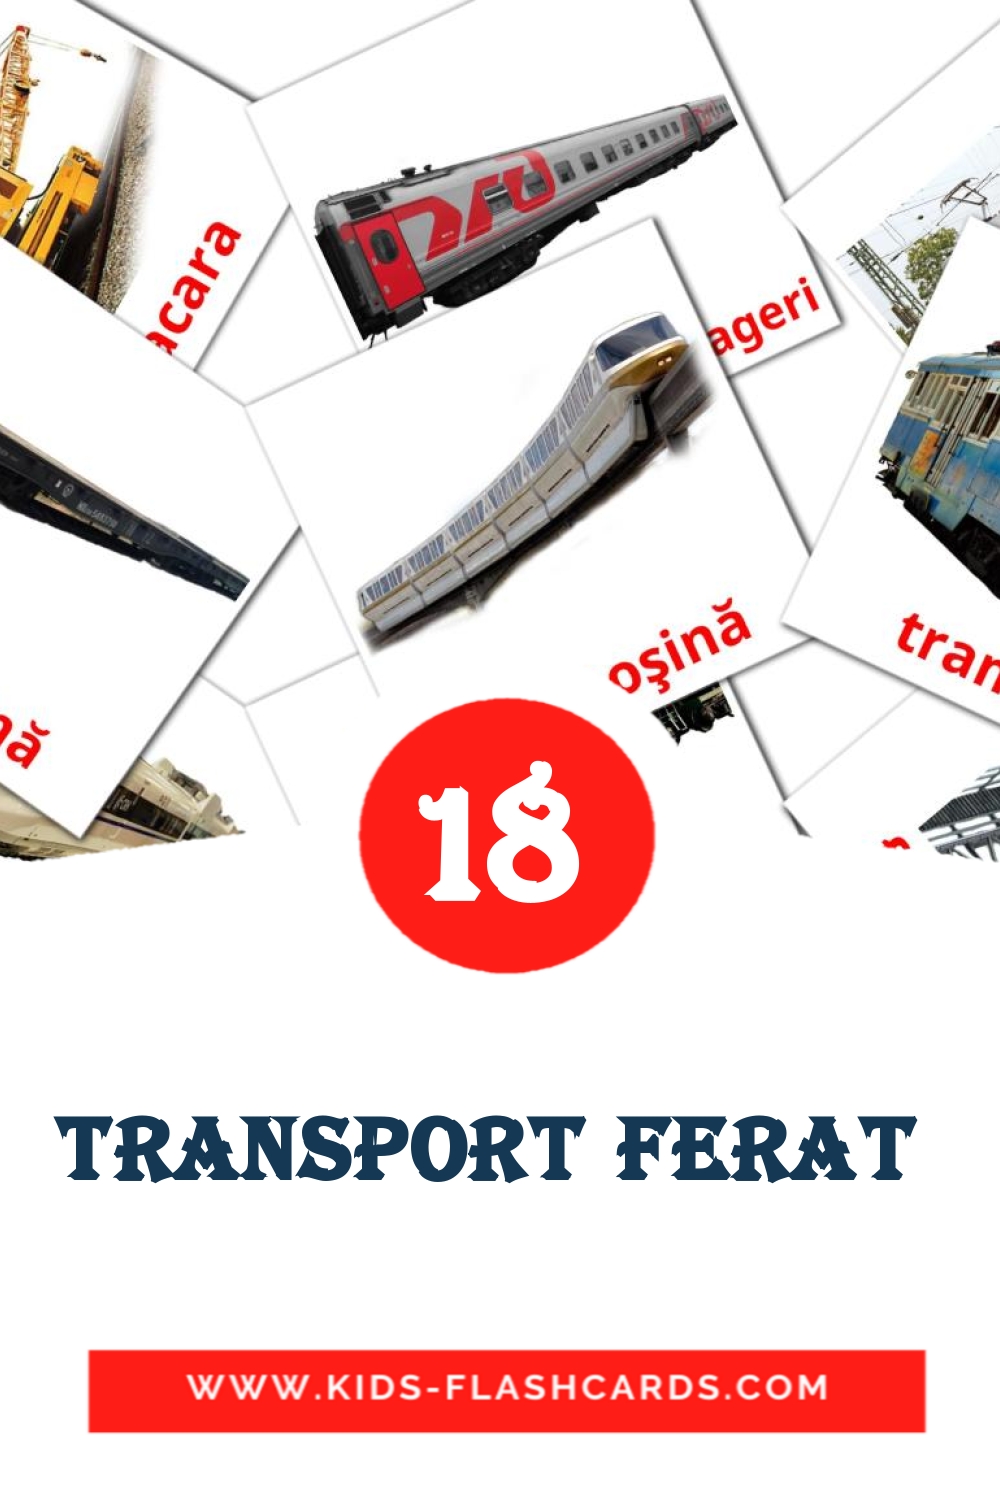 Transport ferat  на румынском для Детского Сада (18 карточек)